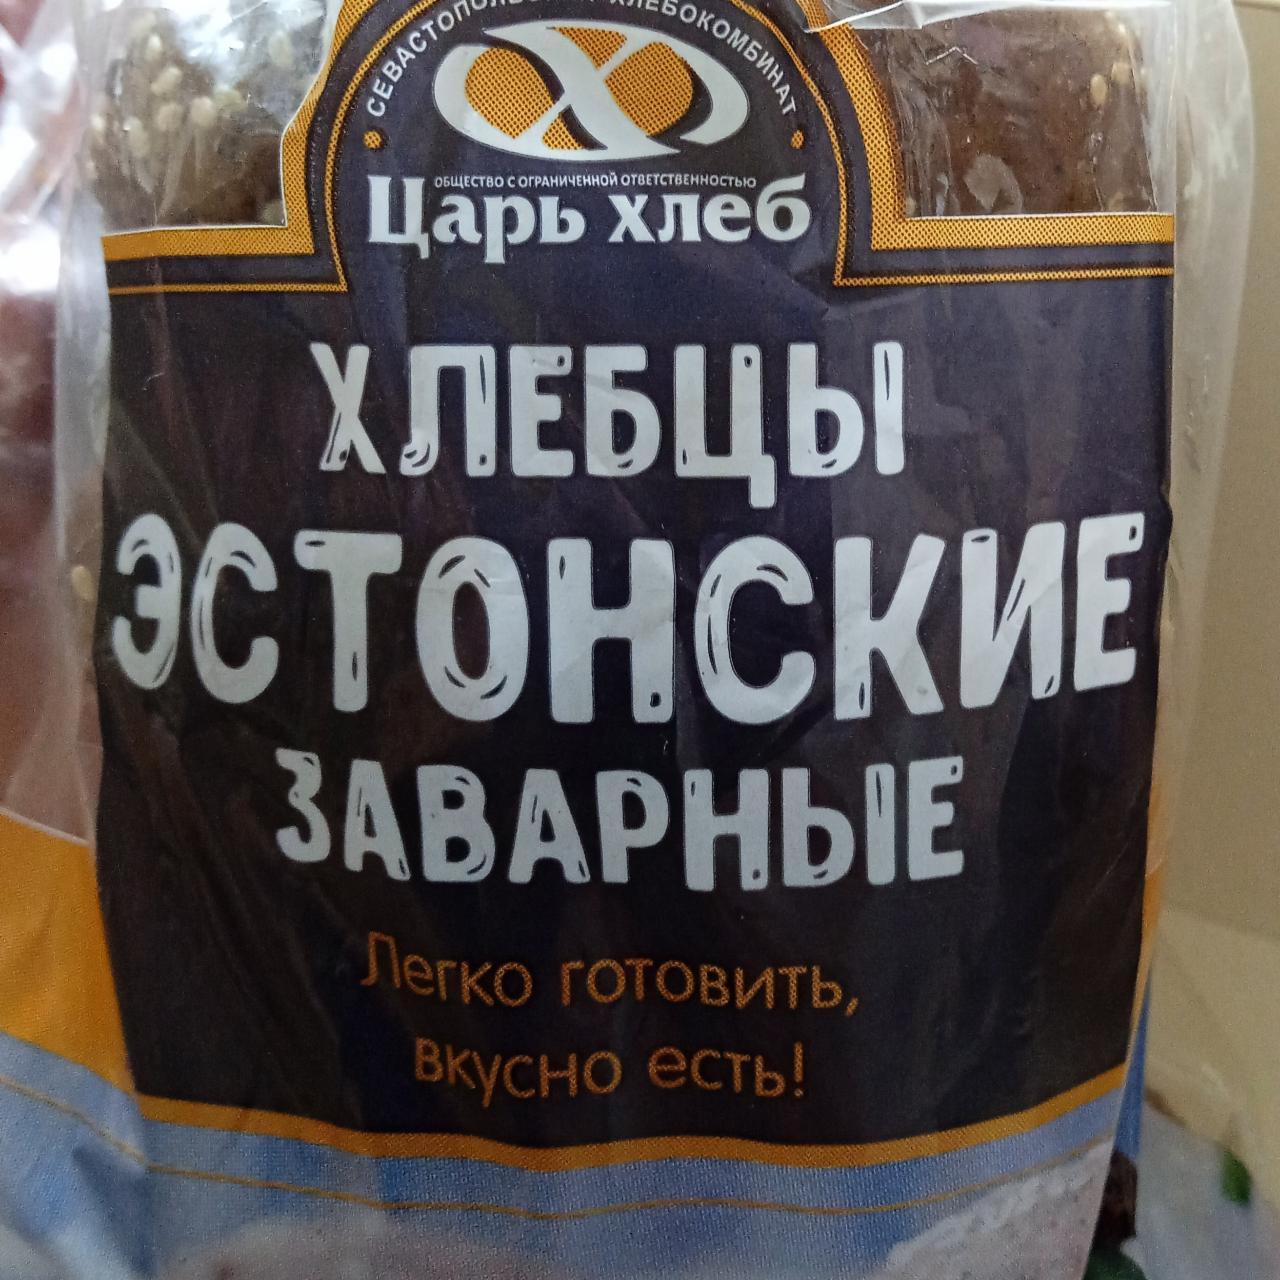 Фото - хлебцы эстонские заварные Царь хлеб